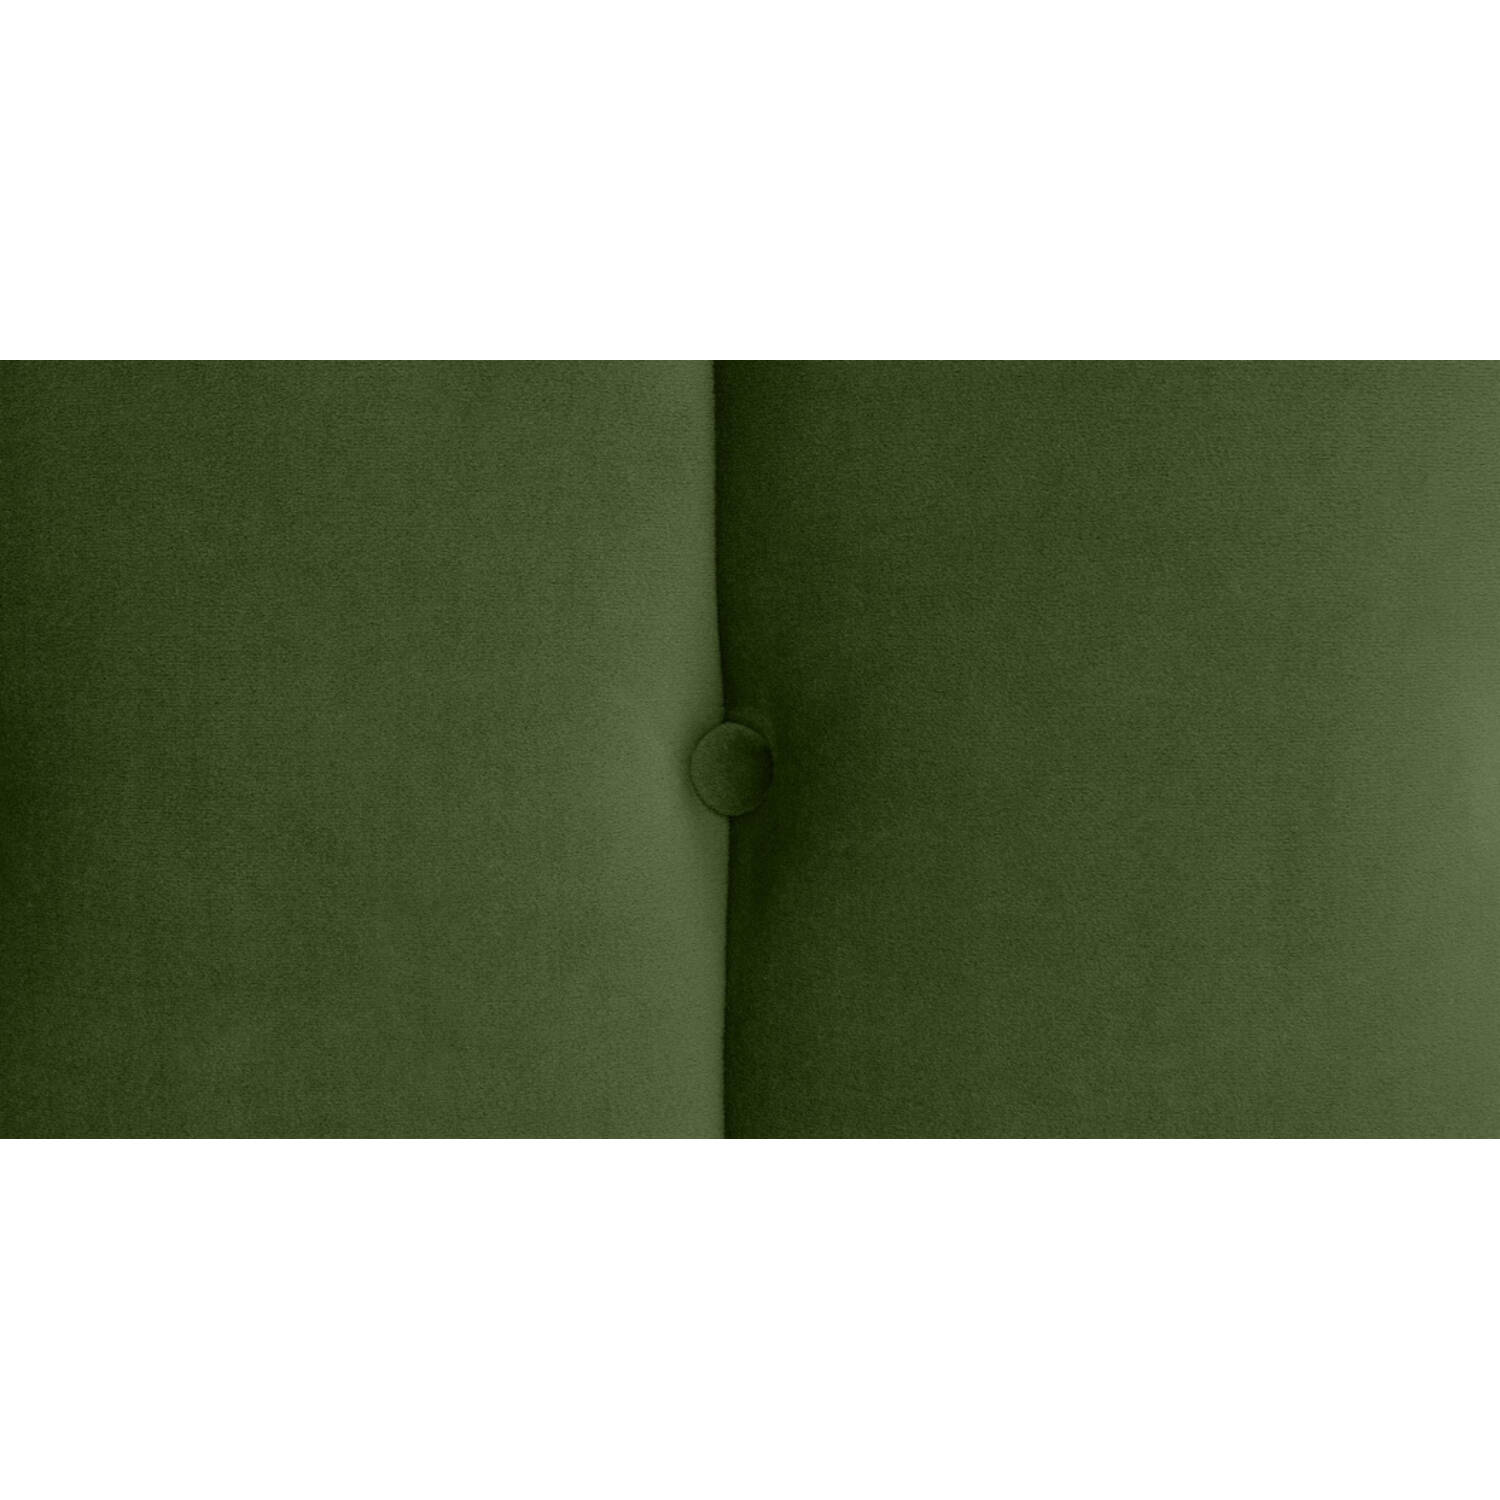 Кровать Margot, зеленая